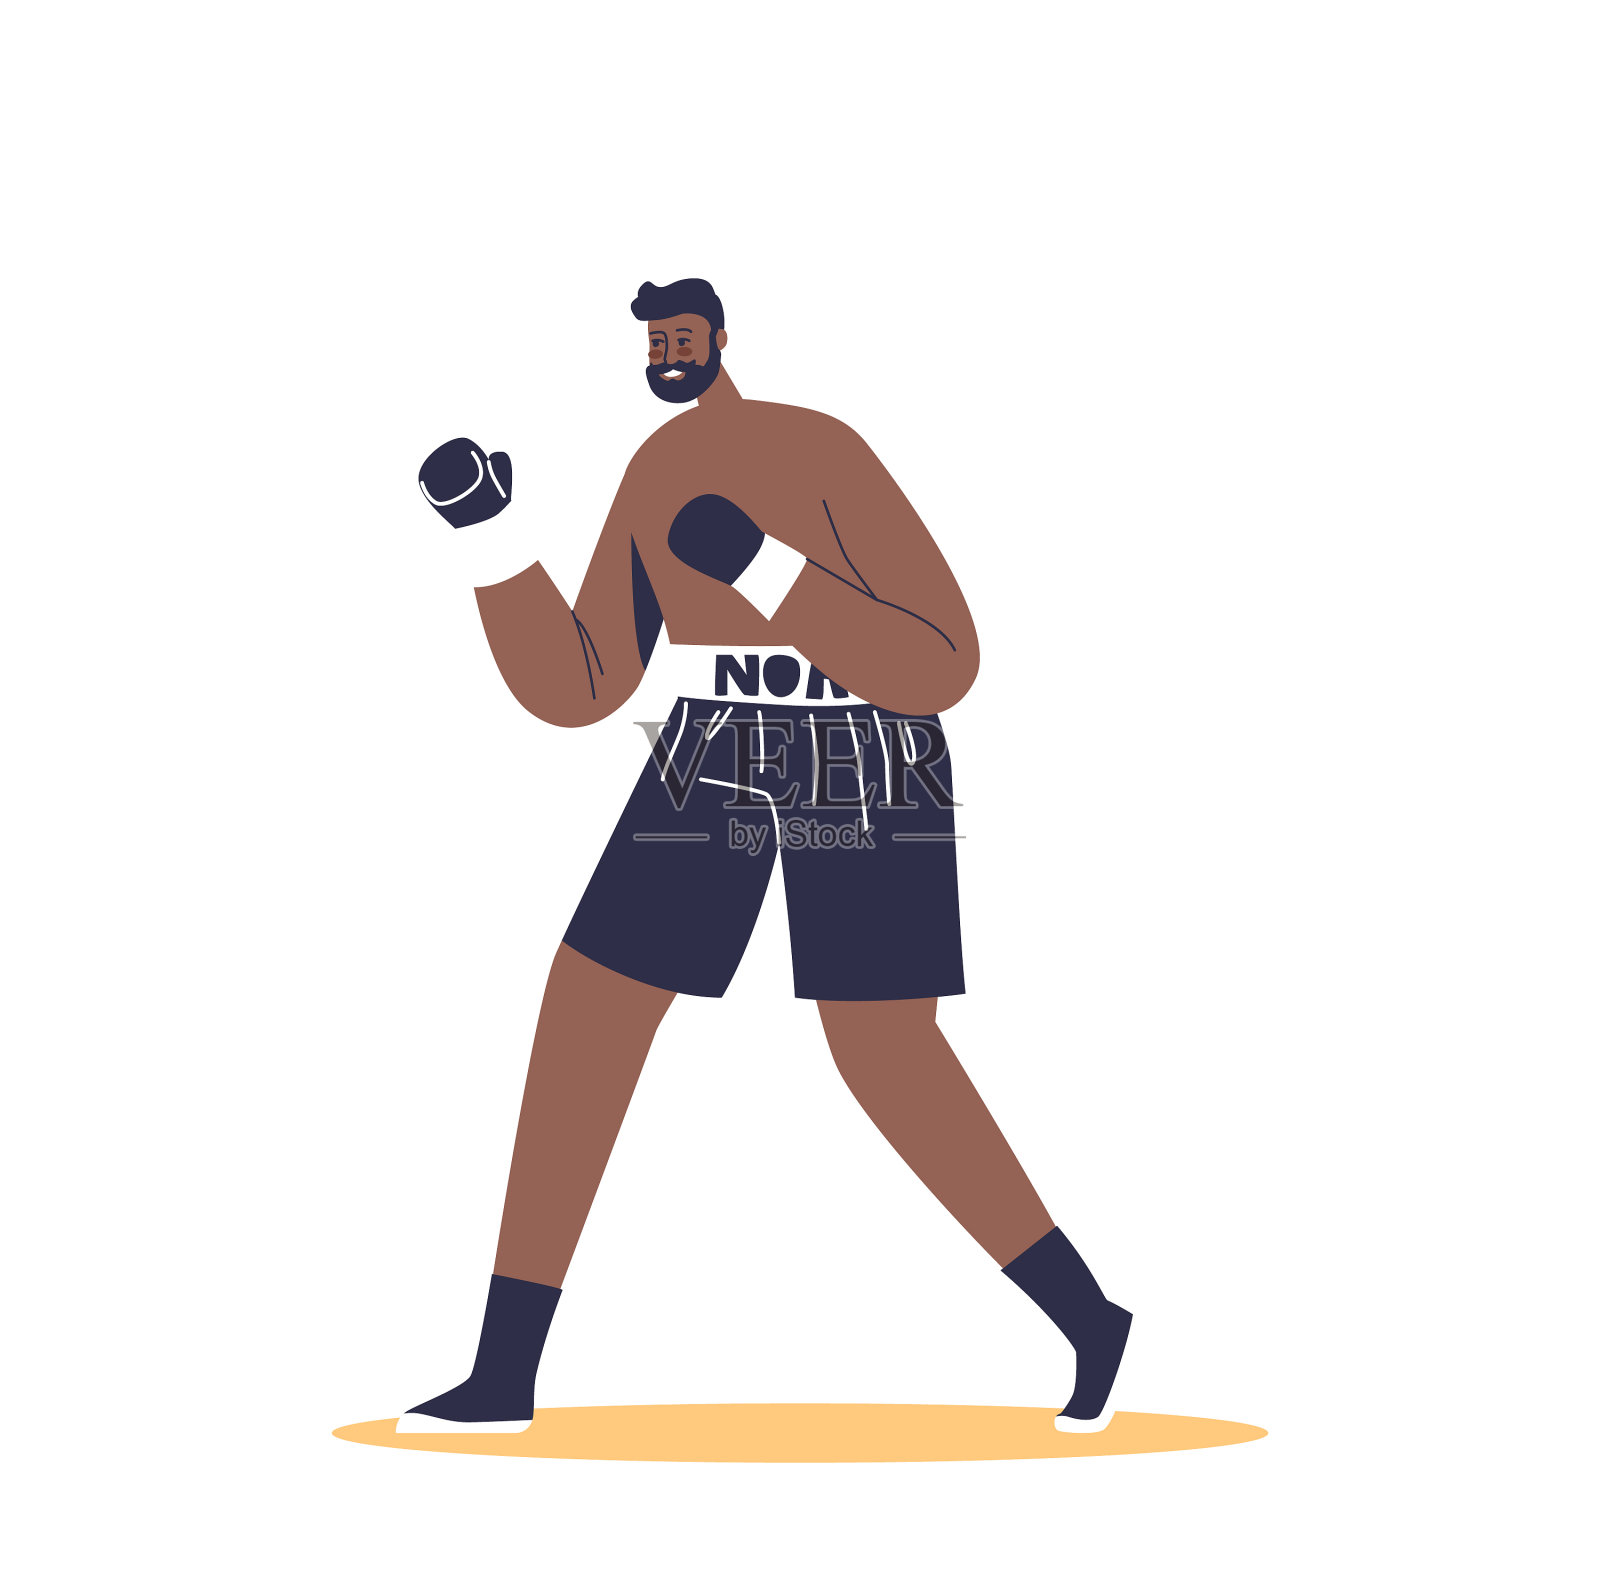 戴拳击手套参加拳击比赛的男拳击手设计元素图片